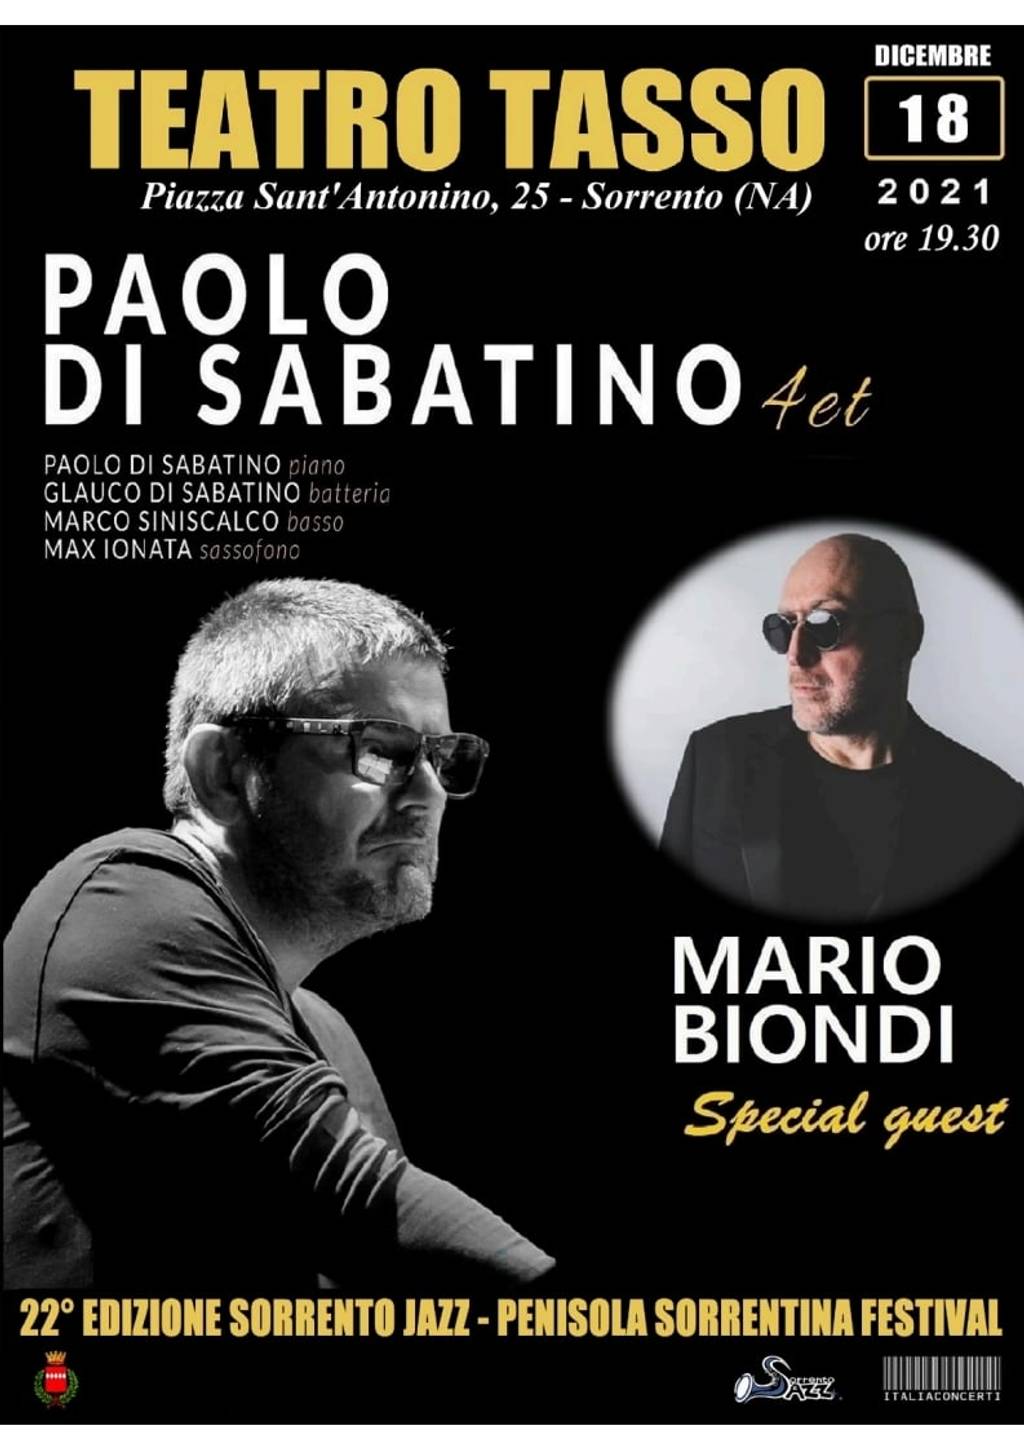 PAOLO DI SABATINO 4et Special Guest MARIO BIONDI